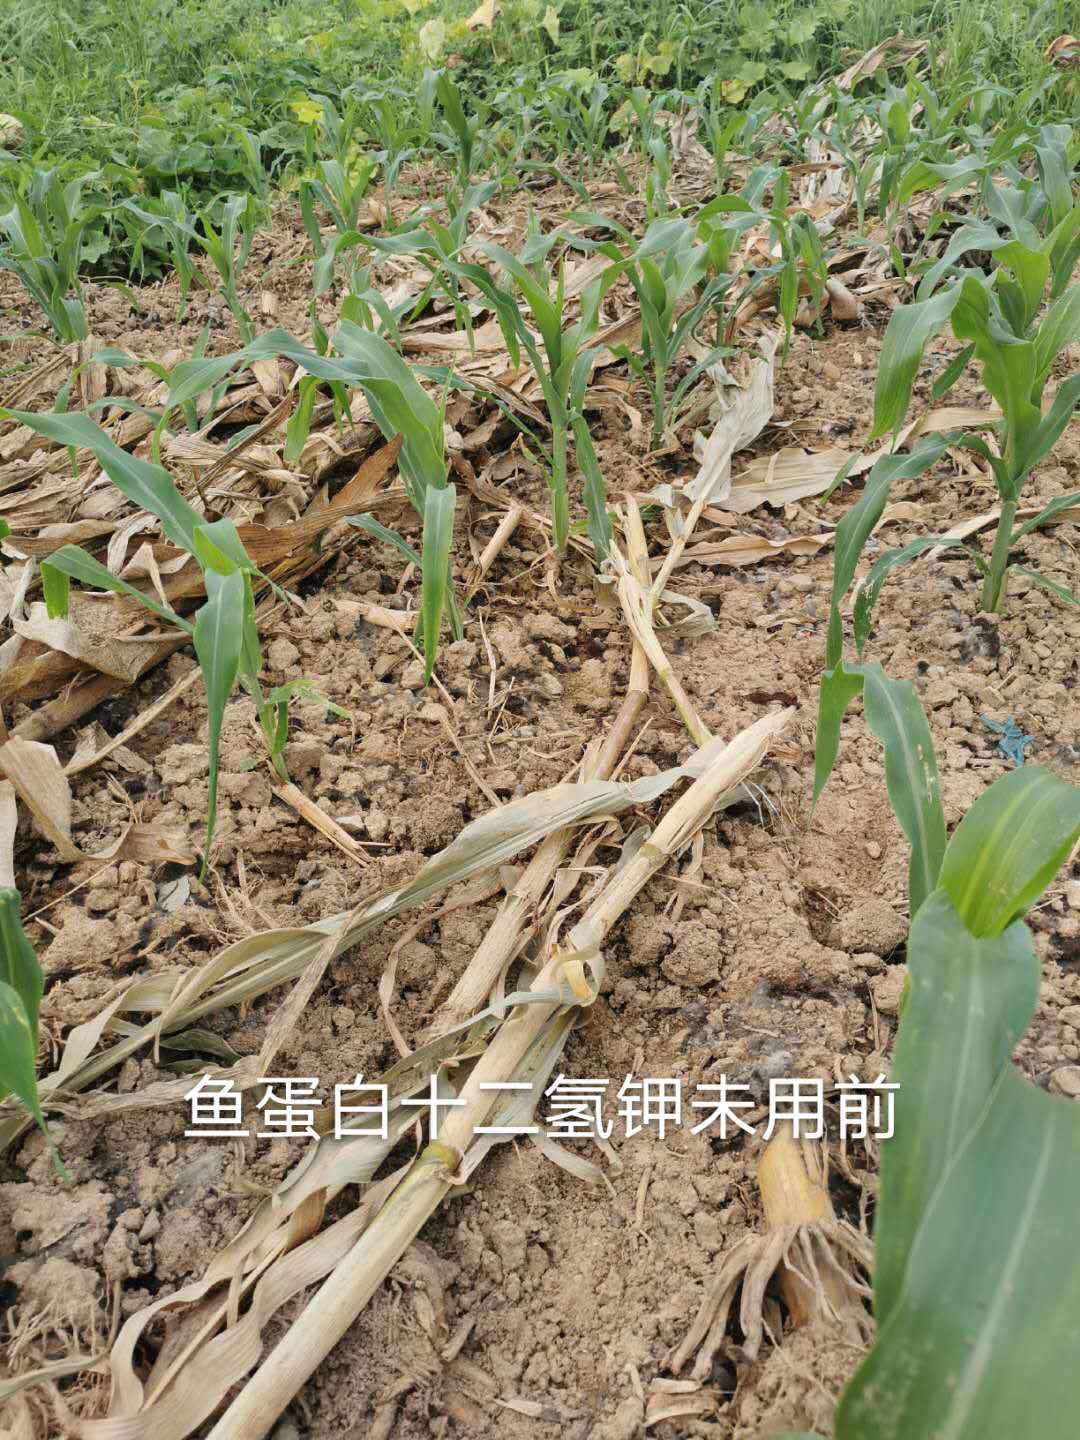 叶面肥使用前玉米长势.jpg